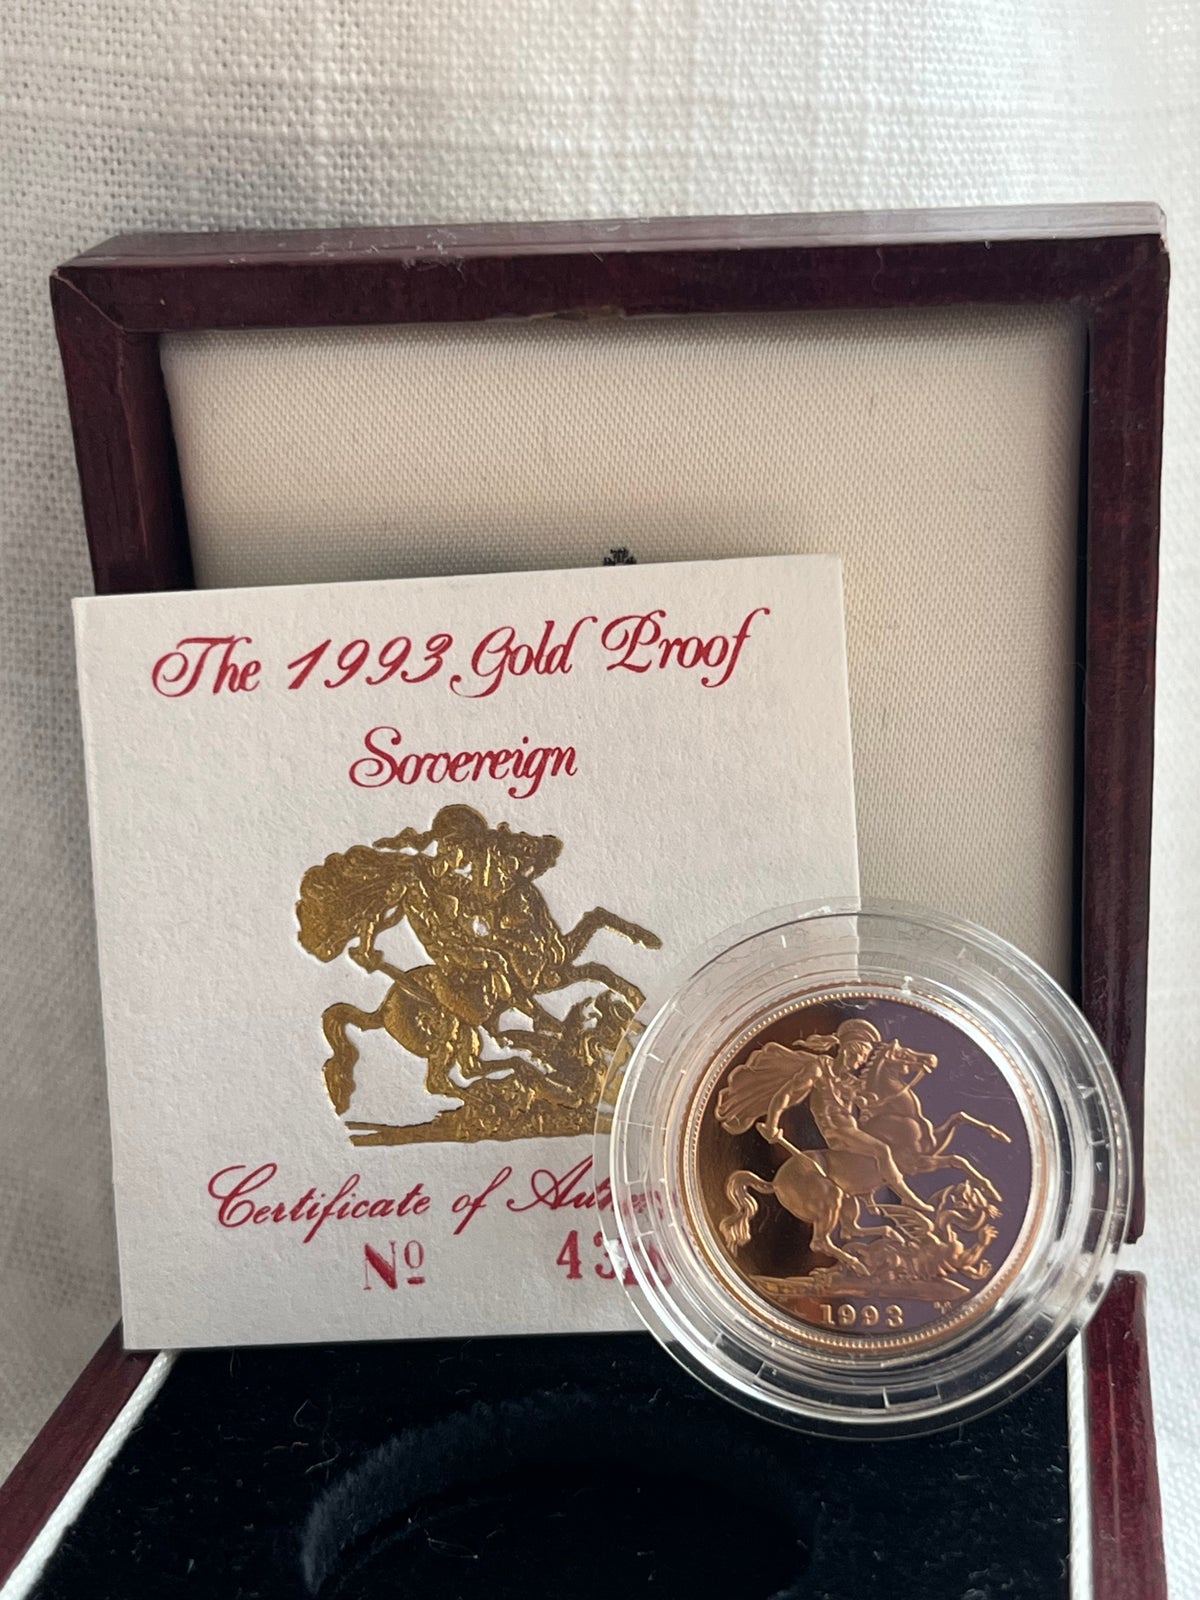 Guld mønt - 1993 Elizabeth II Gold Proof Sovereign